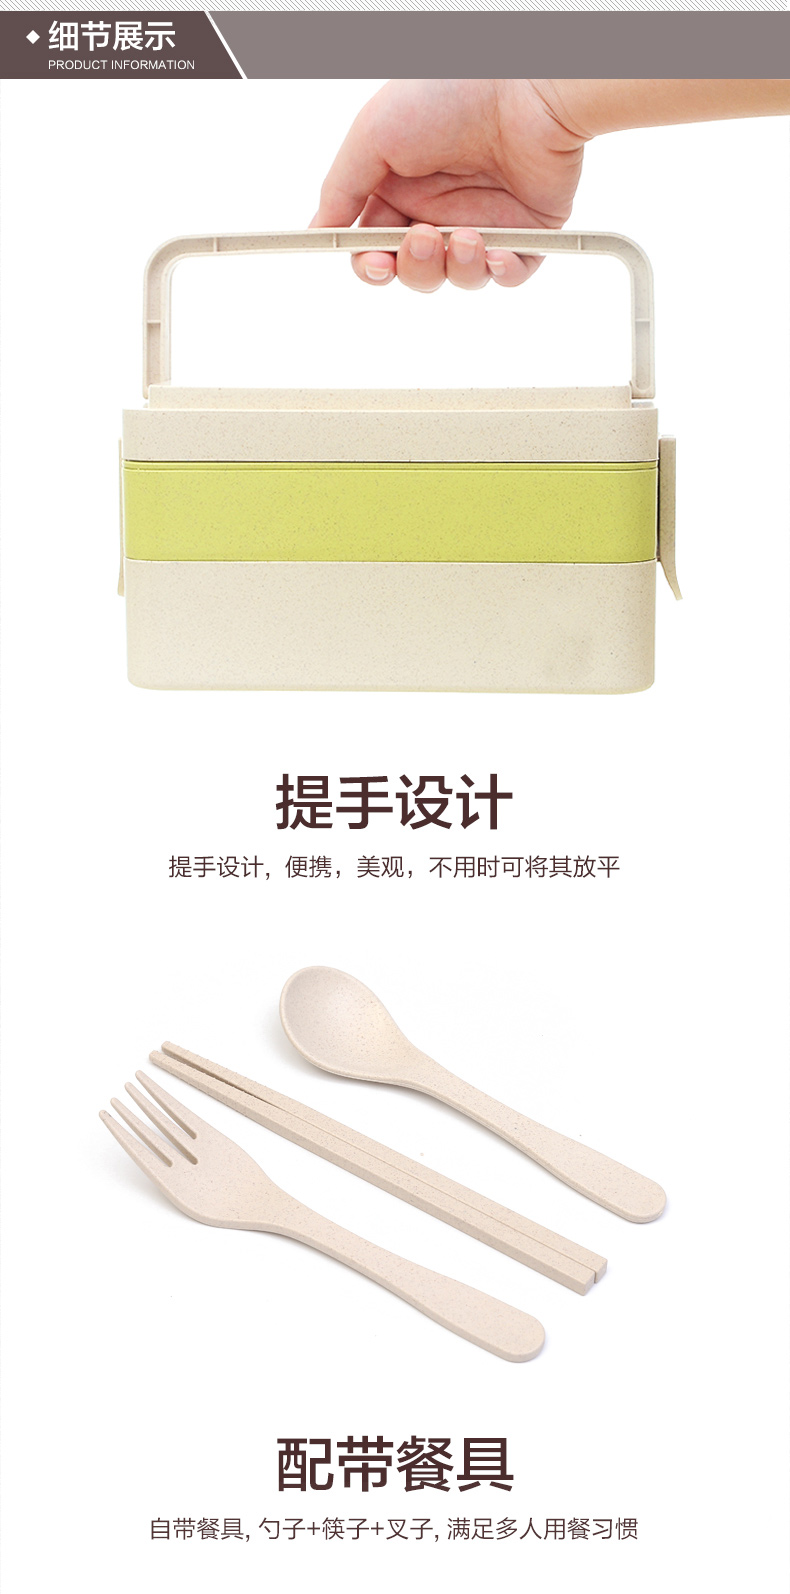 开馨宝三层小麦秸秆饭盒便当盒午餐盒 学生便携餐具 寿司盒 绿色